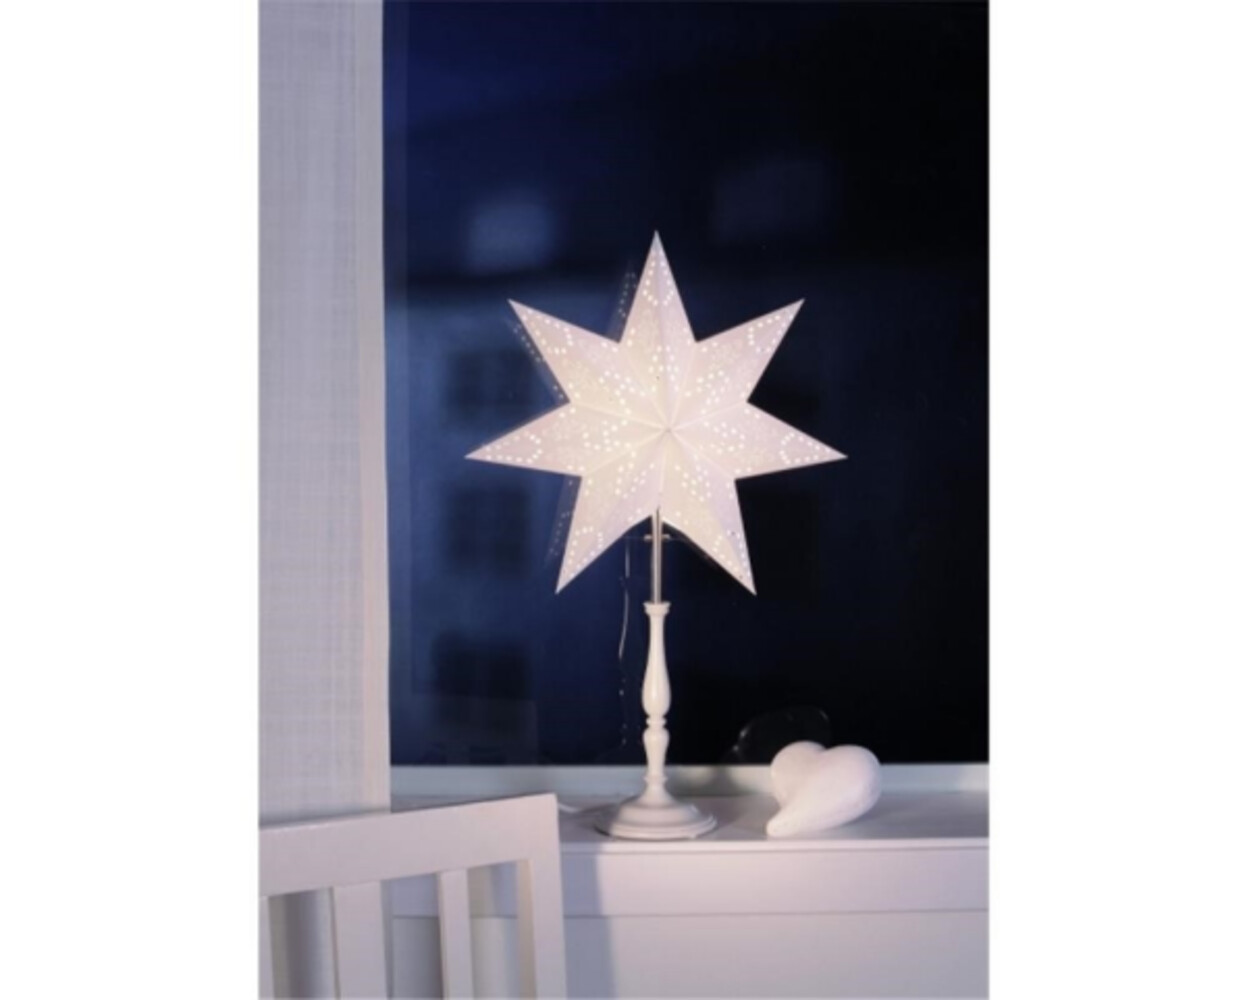 Stehlampe in Weiß aus Holz und Papier von Star Trading, die eine romantische Atmosphäre mit ihren MiniStar-Details schafft